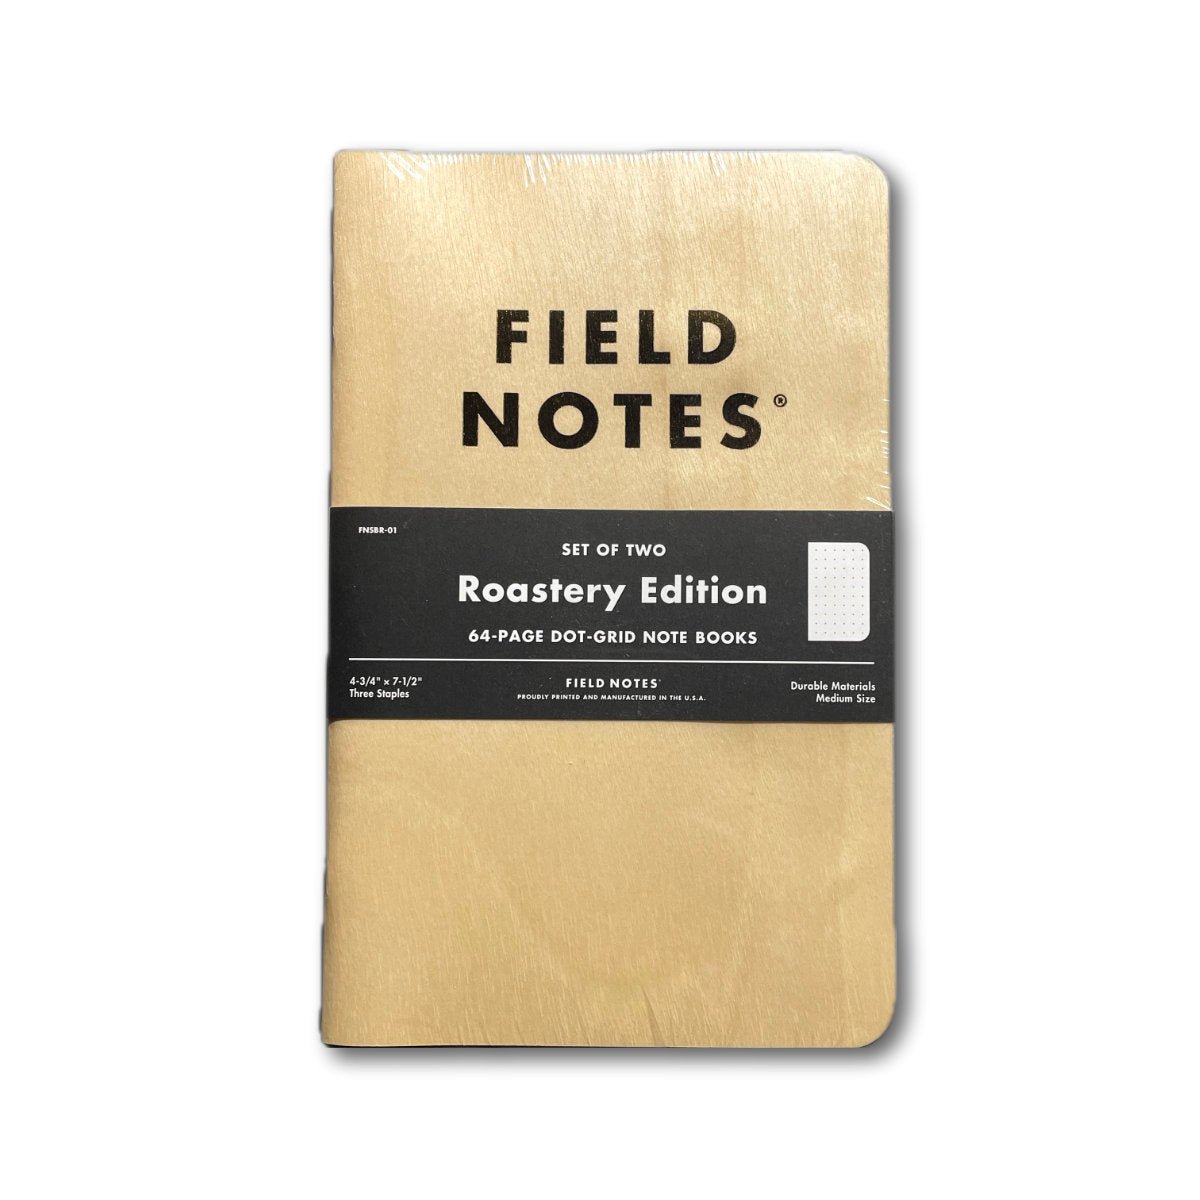 Field Notes X Starbucks - Roastery - Notegeist